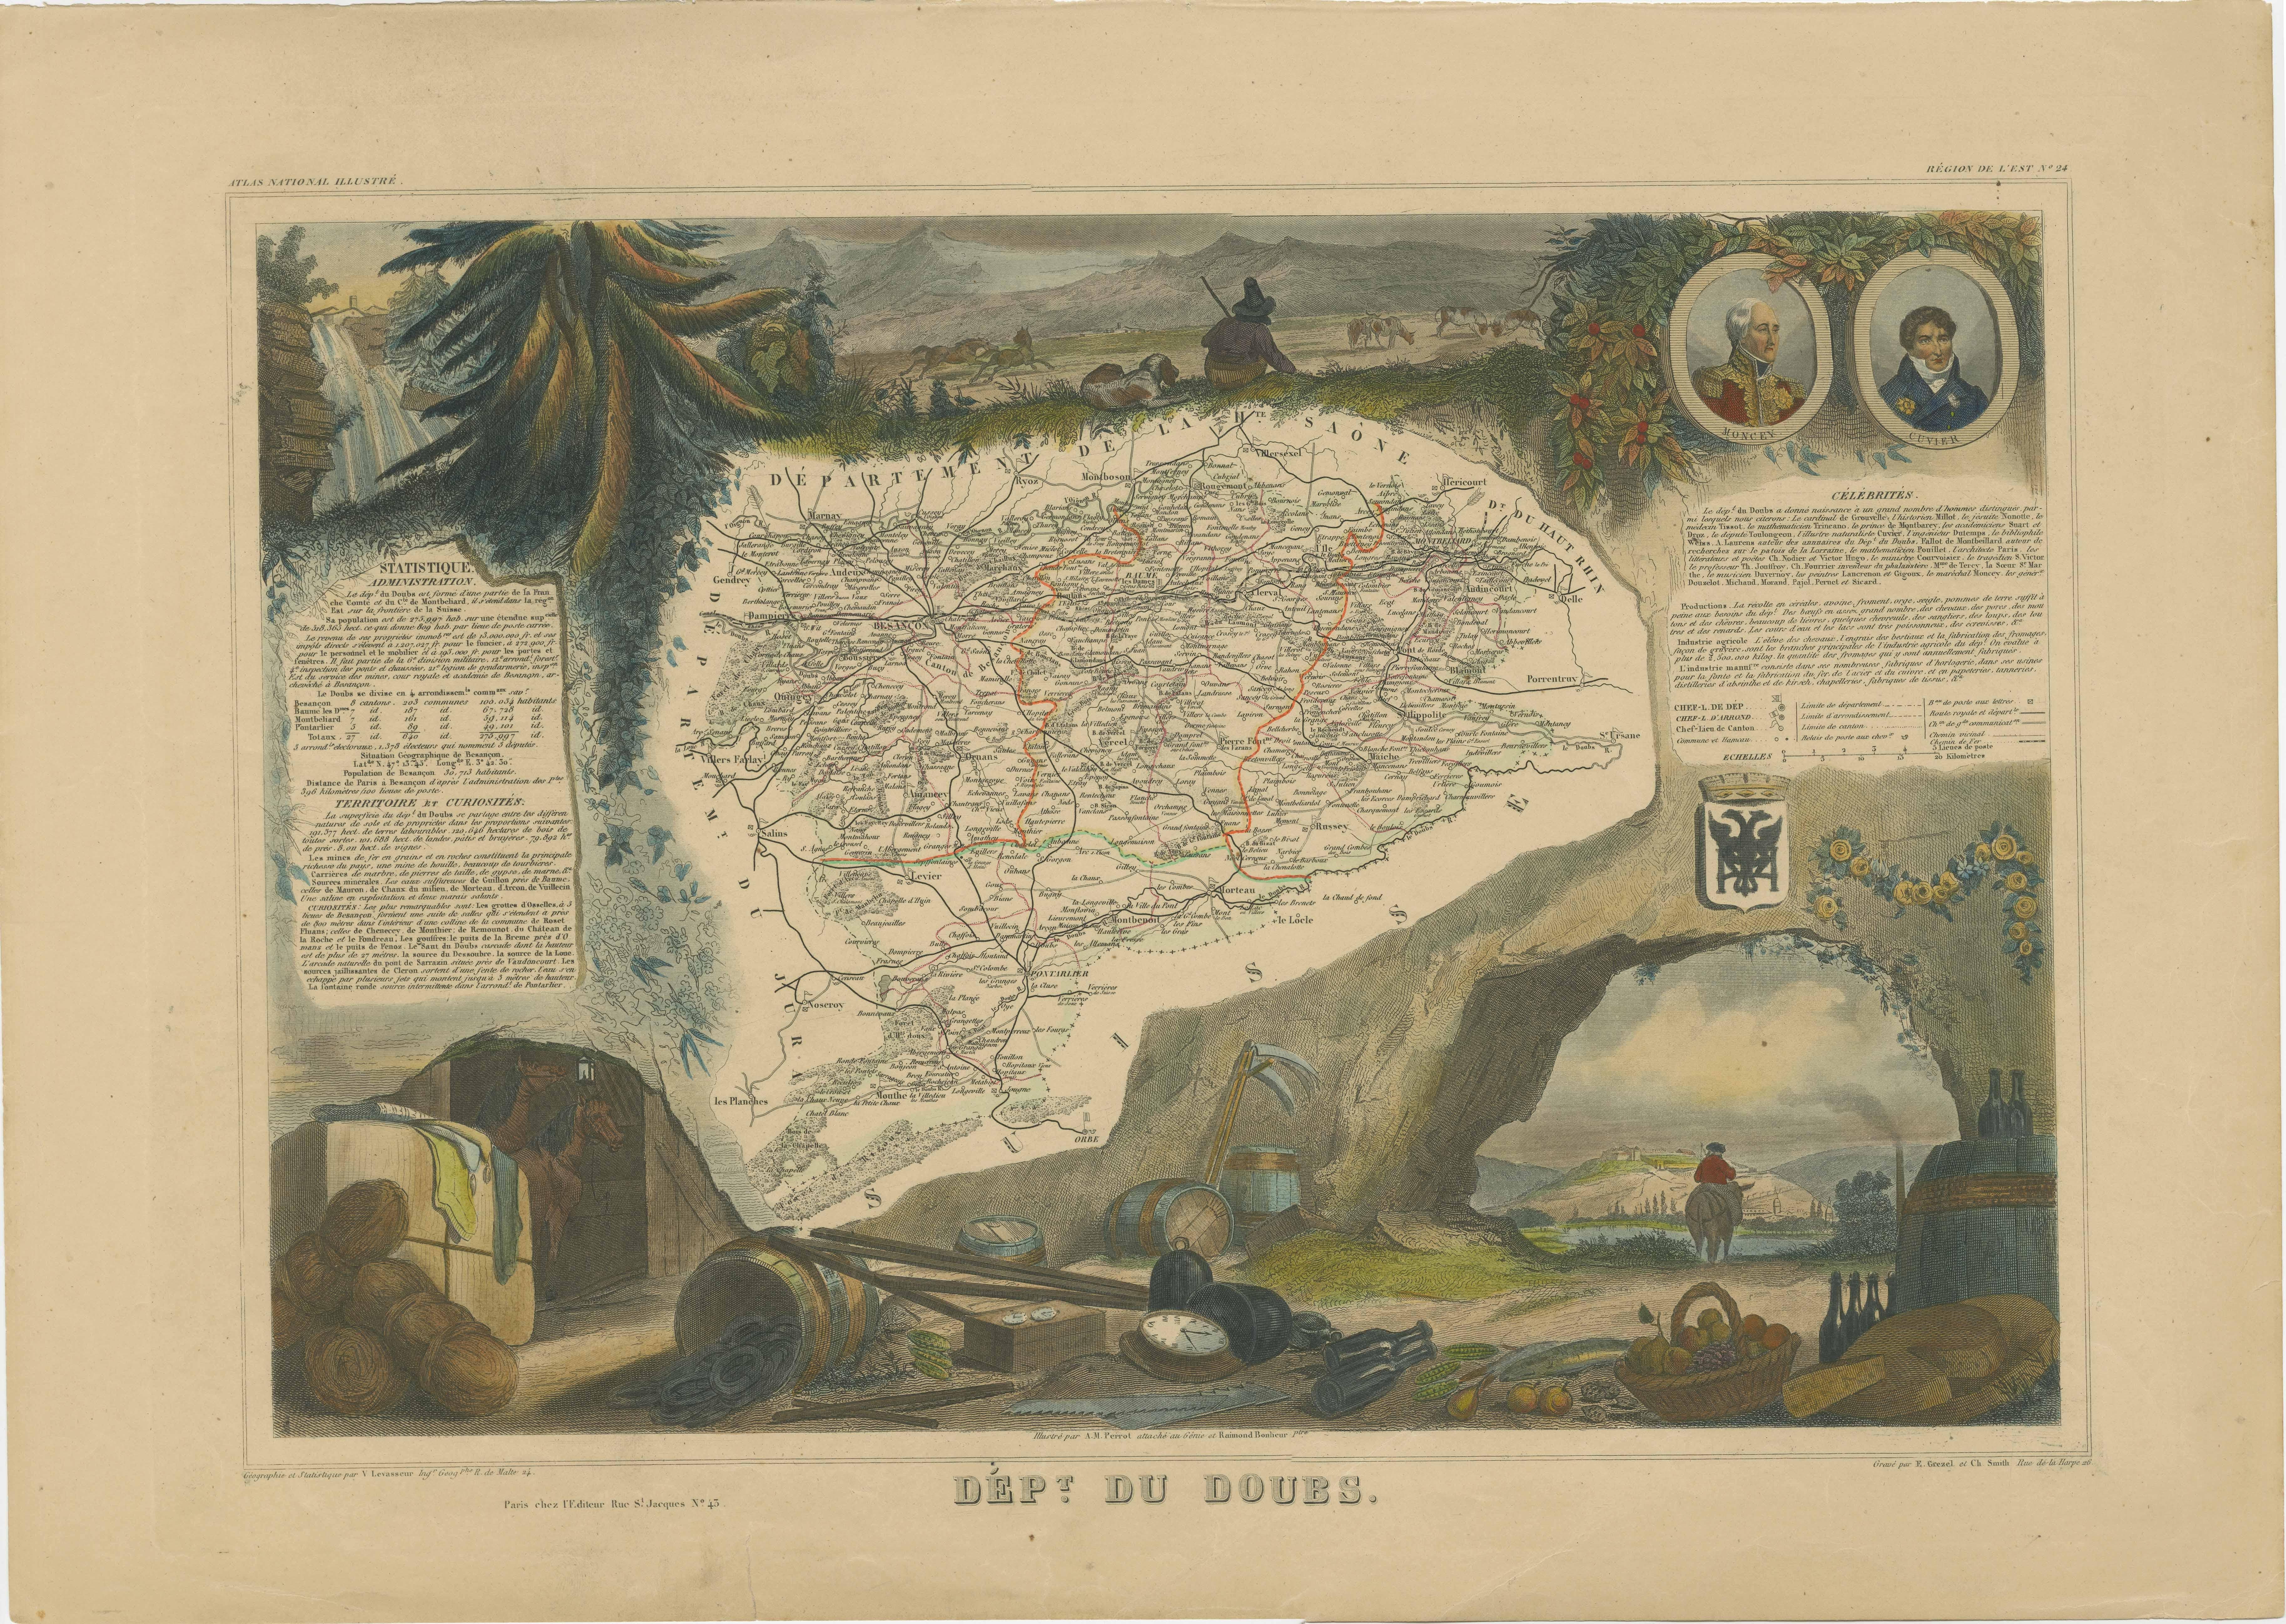 Antike Karte mit dem Titel 'Dépt. du Doubs'. Karte des französischen Departements Doubs, Frankreich. Das Ganze ist von aufwendigen dekorativen Gravuren umgeben, die sowohl die natürliche Schönheit als auch den Handelsreichtum des Landes illustrieren